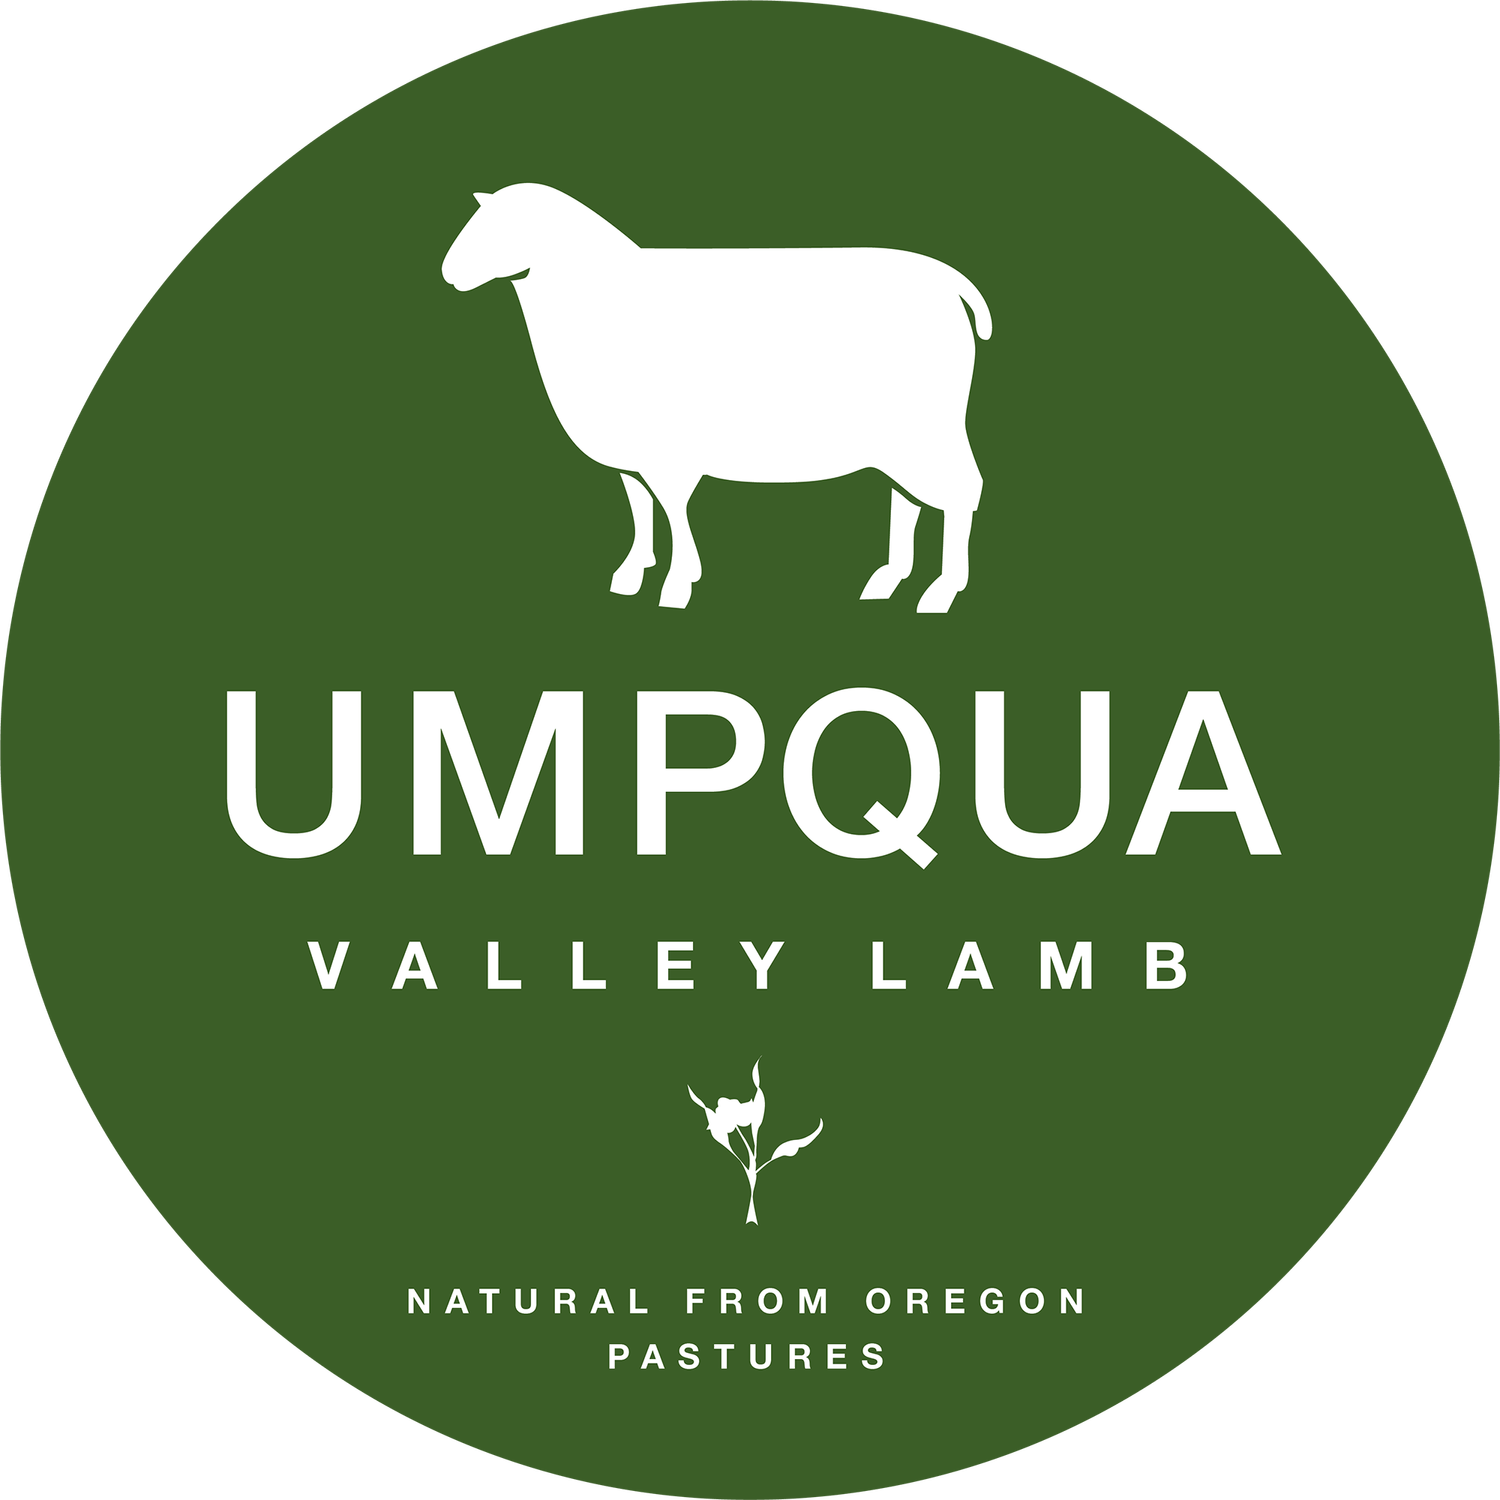 Umpqua Valley Lamb